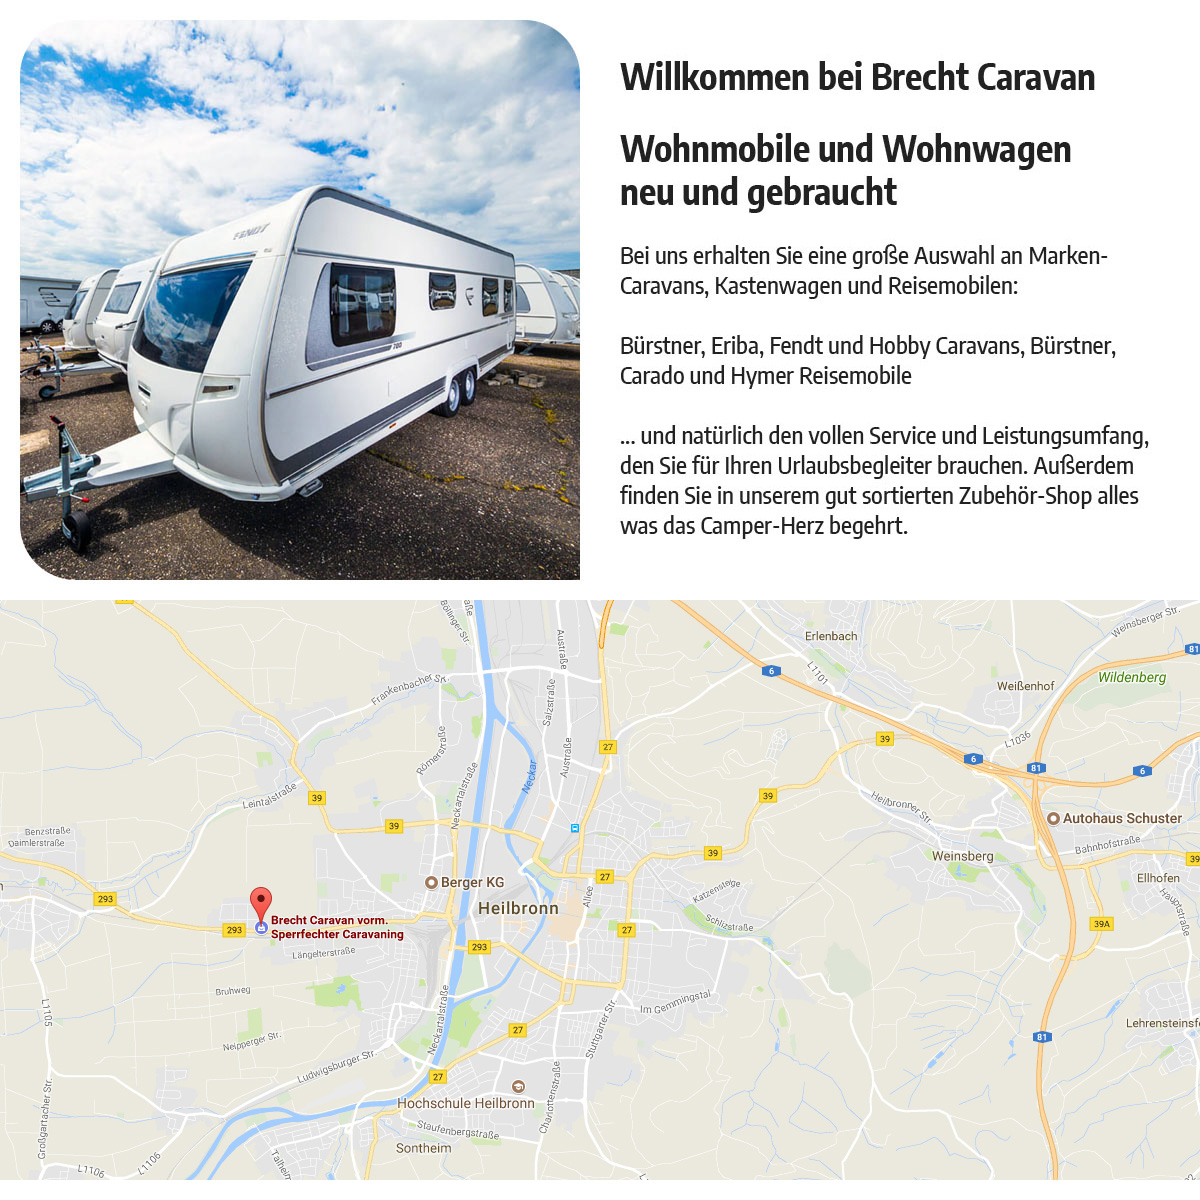 Wohnwagen, Wohnmobile für Karlsruhe - Brecht CaraVan: Reparatur, Campingbusse, mieten,..